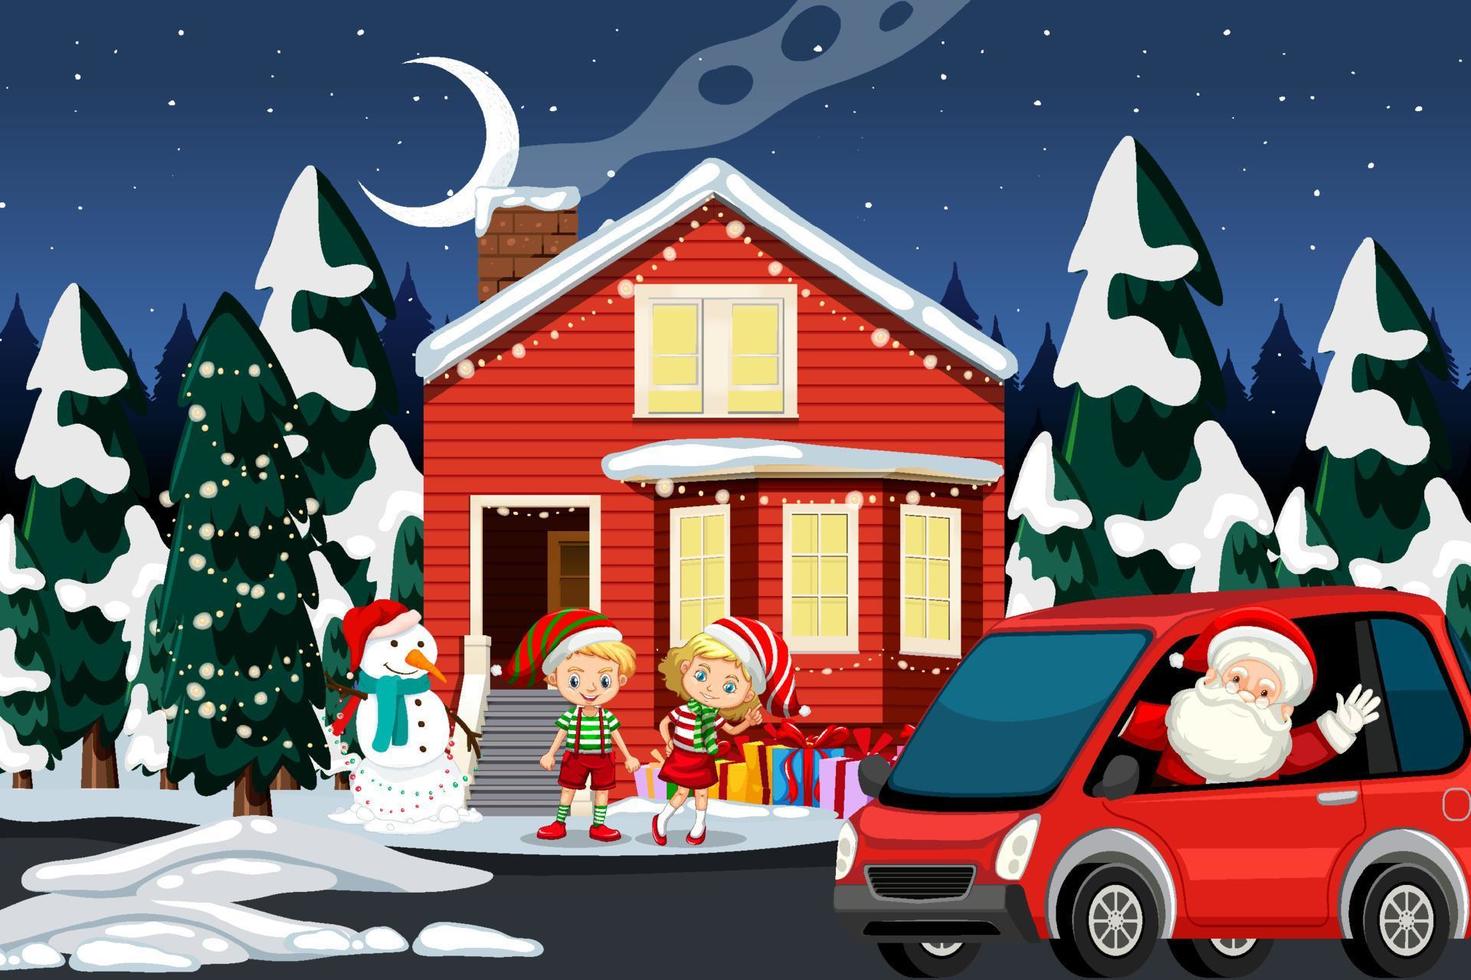 escena de invierno de navidad con niños felices y santa claus vector